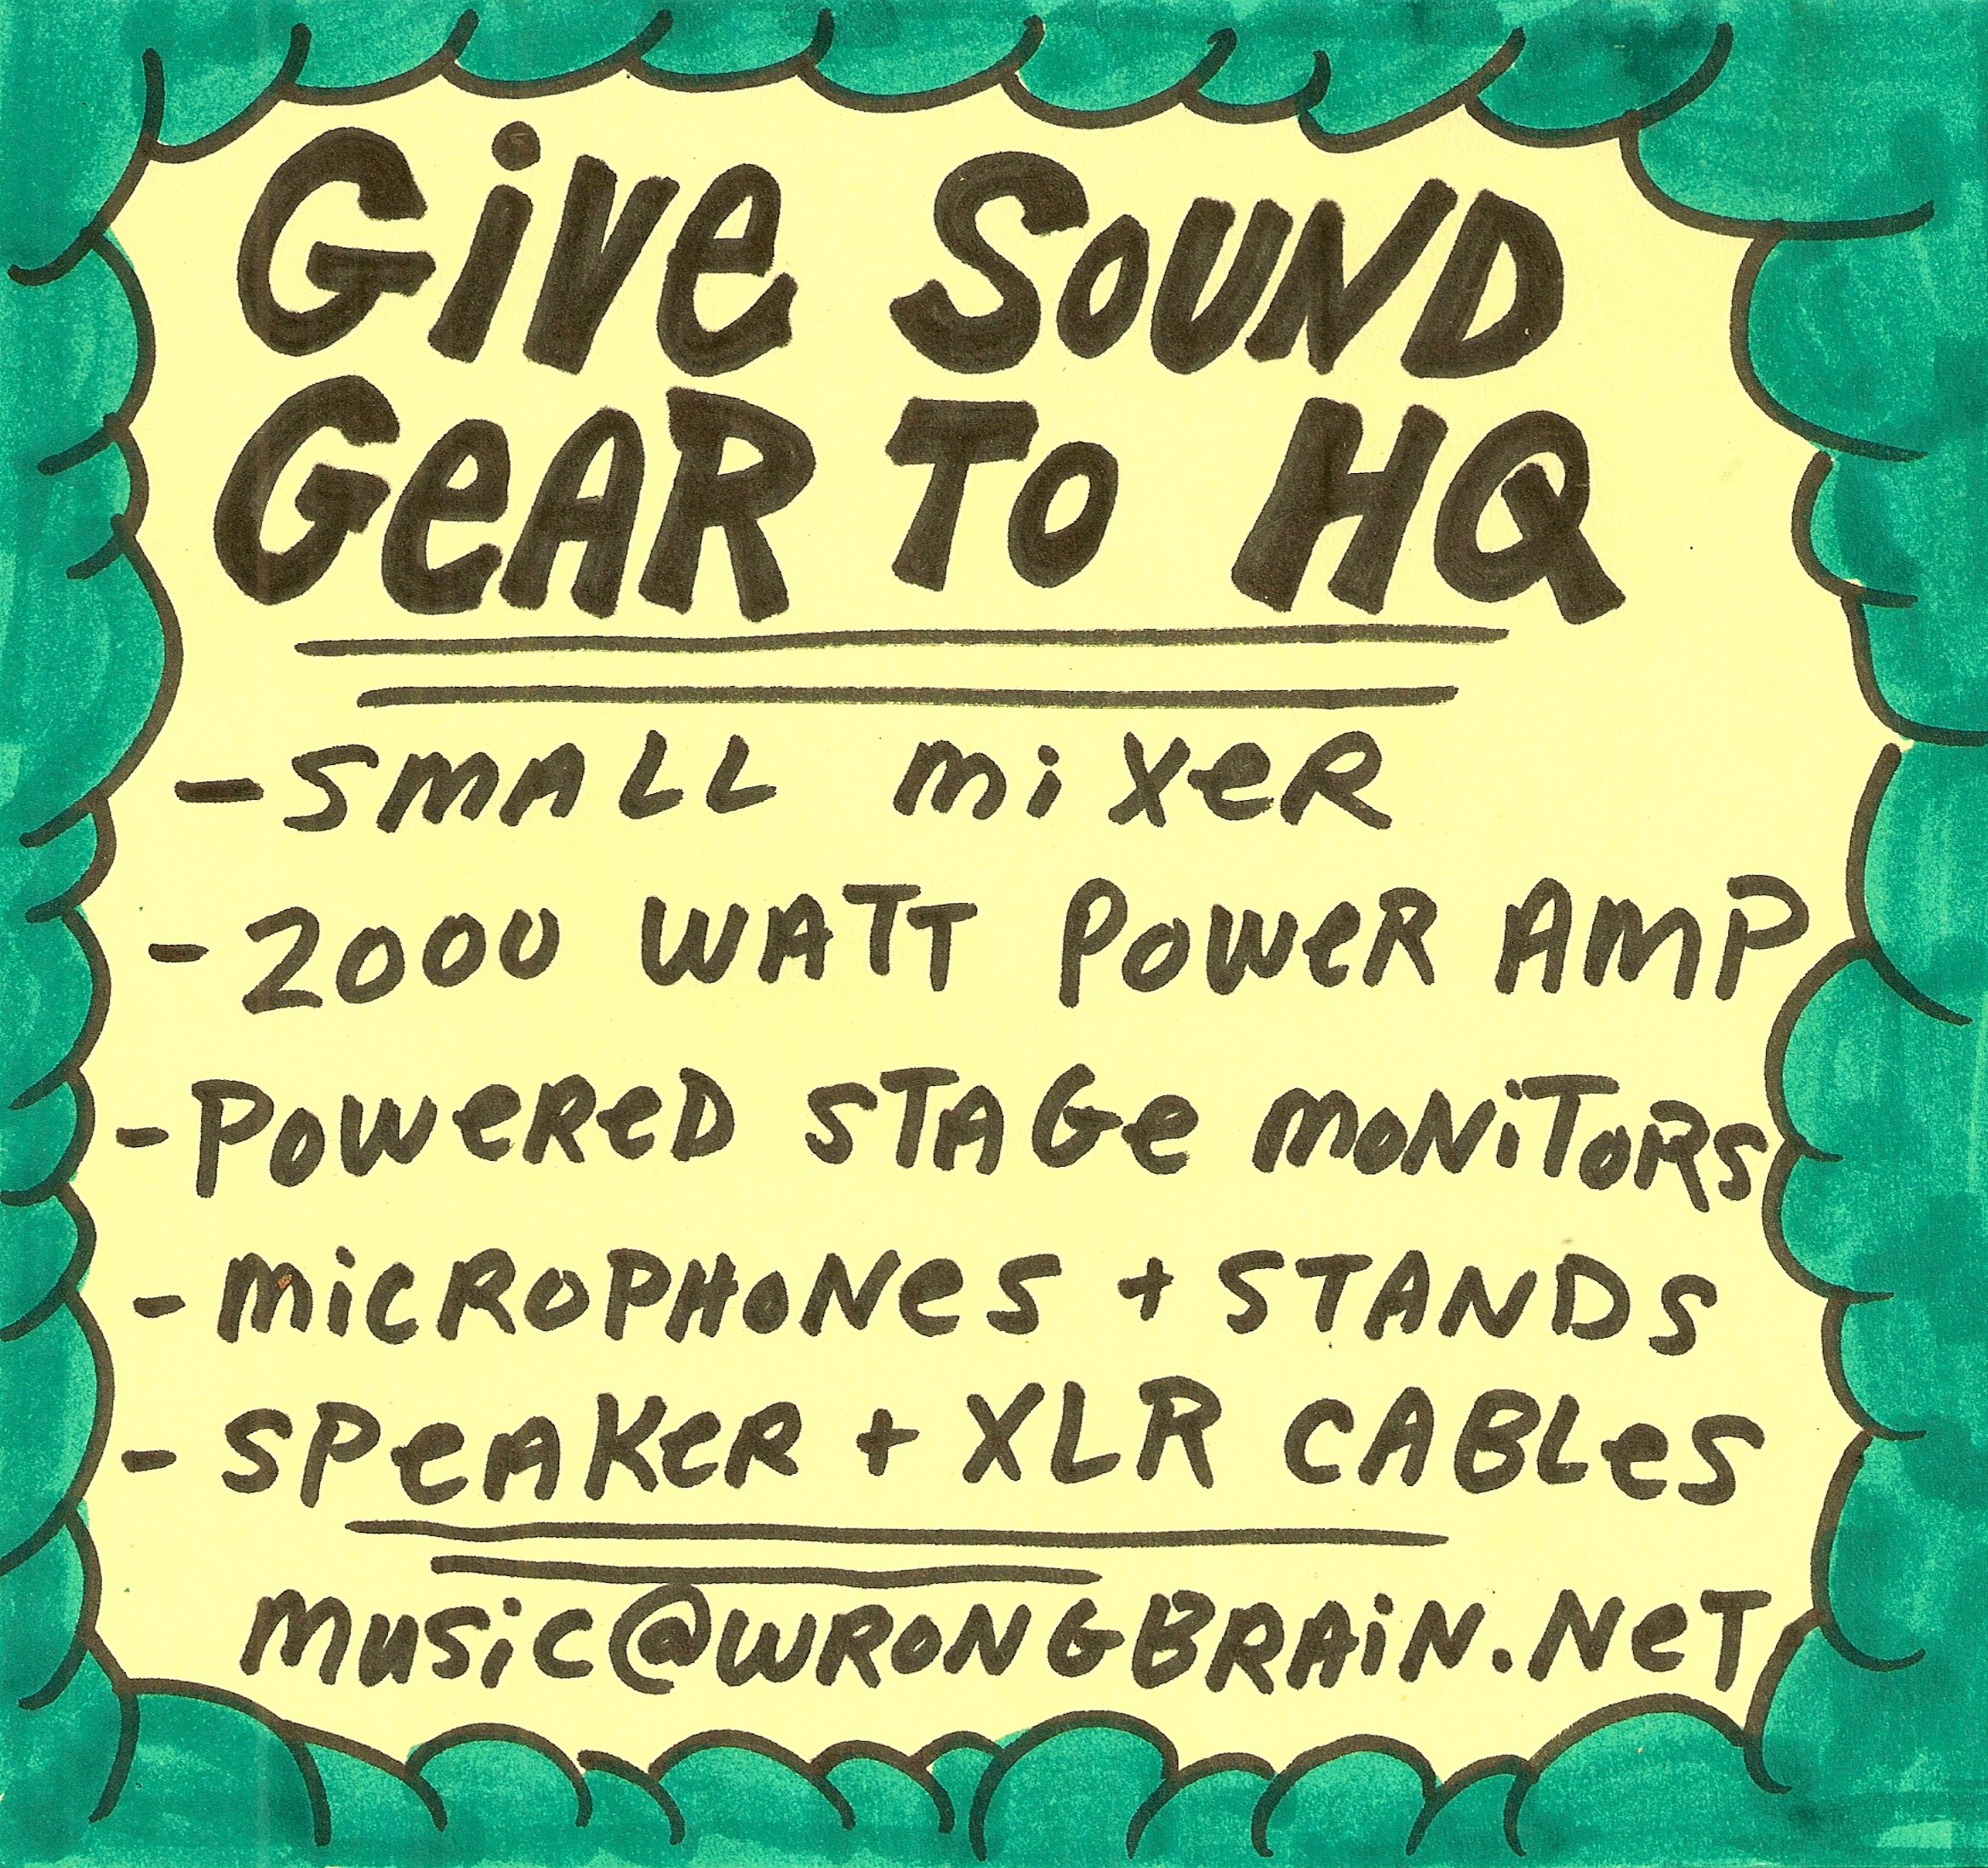 sound gear needed